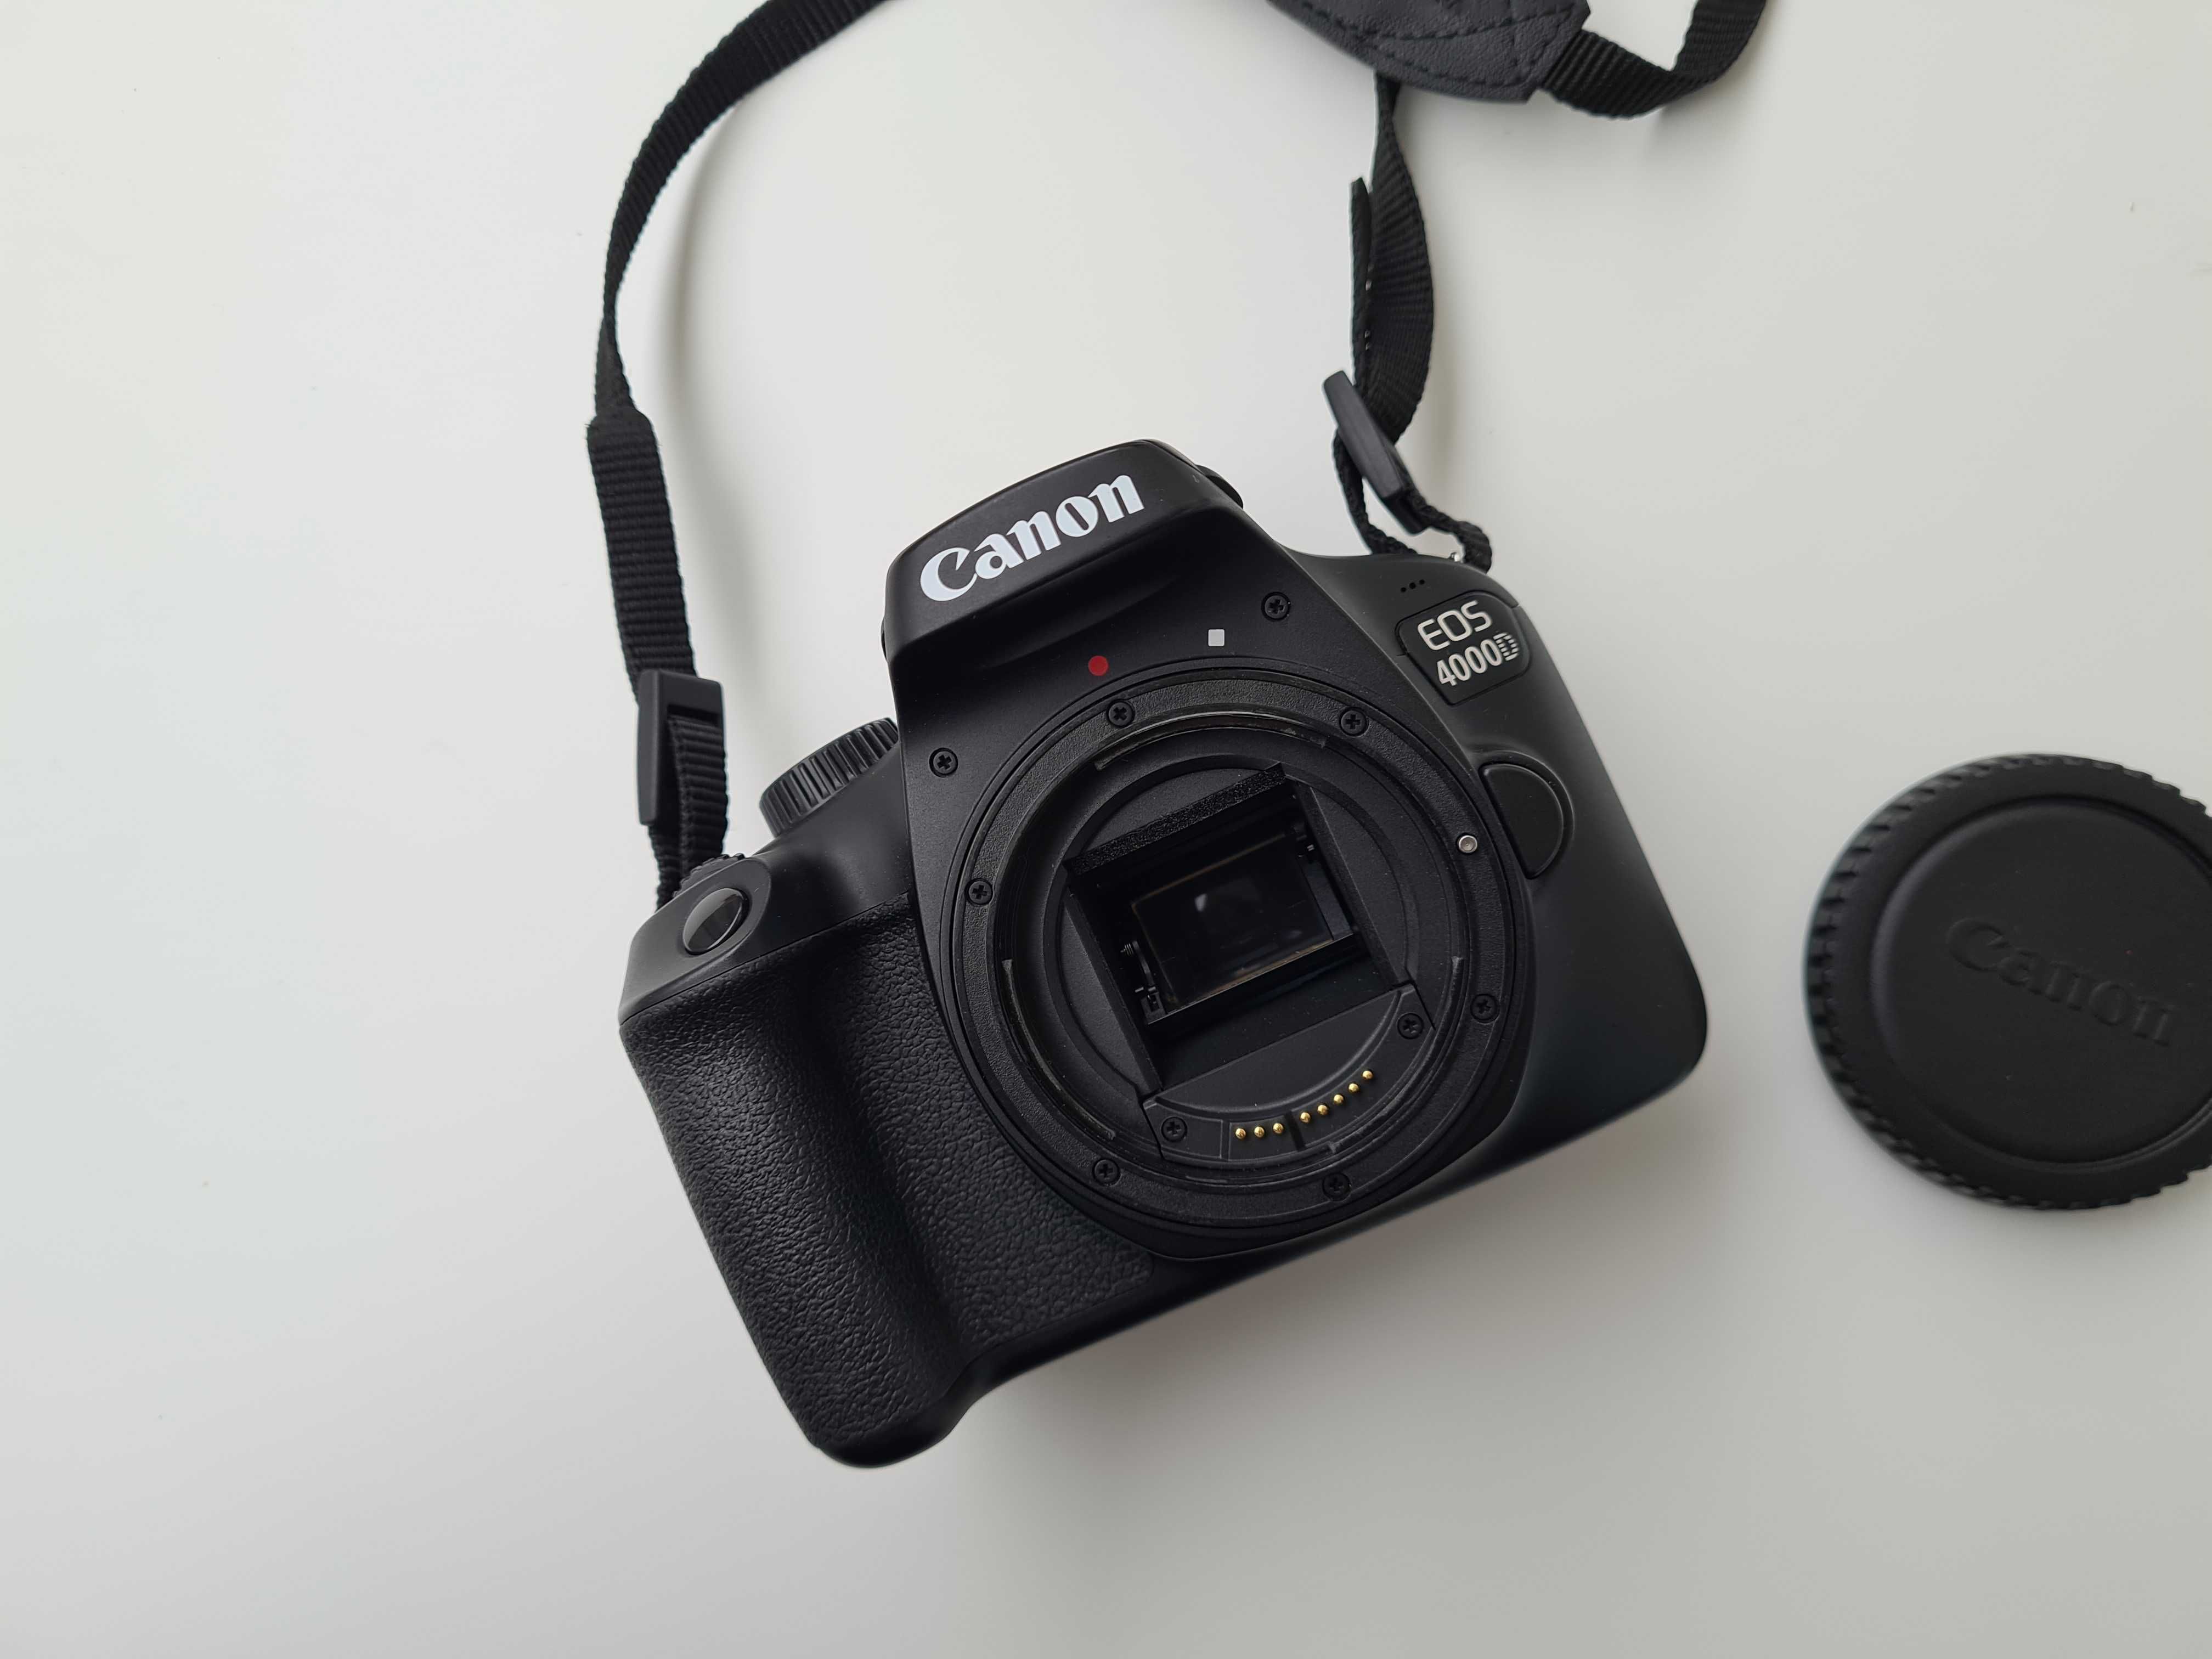 .Aparat Canon 4000D body - przebieg 2.840 zdjęć + nowa torba, jak nowy